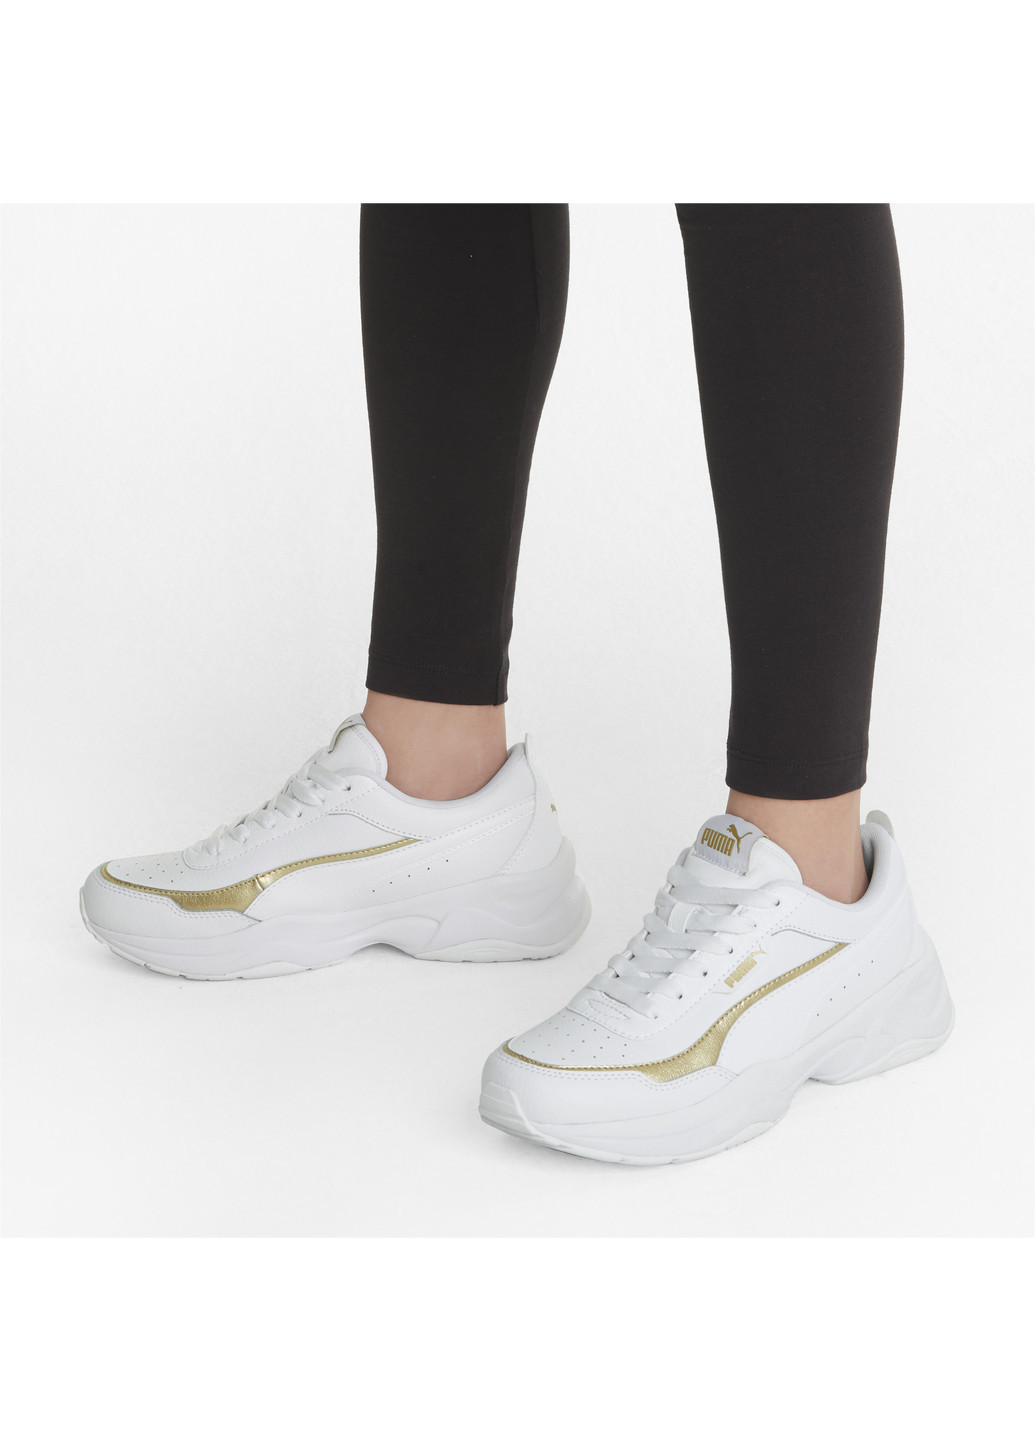 Білі всесезонні кросівки cilia mode lux women's trainers Puma